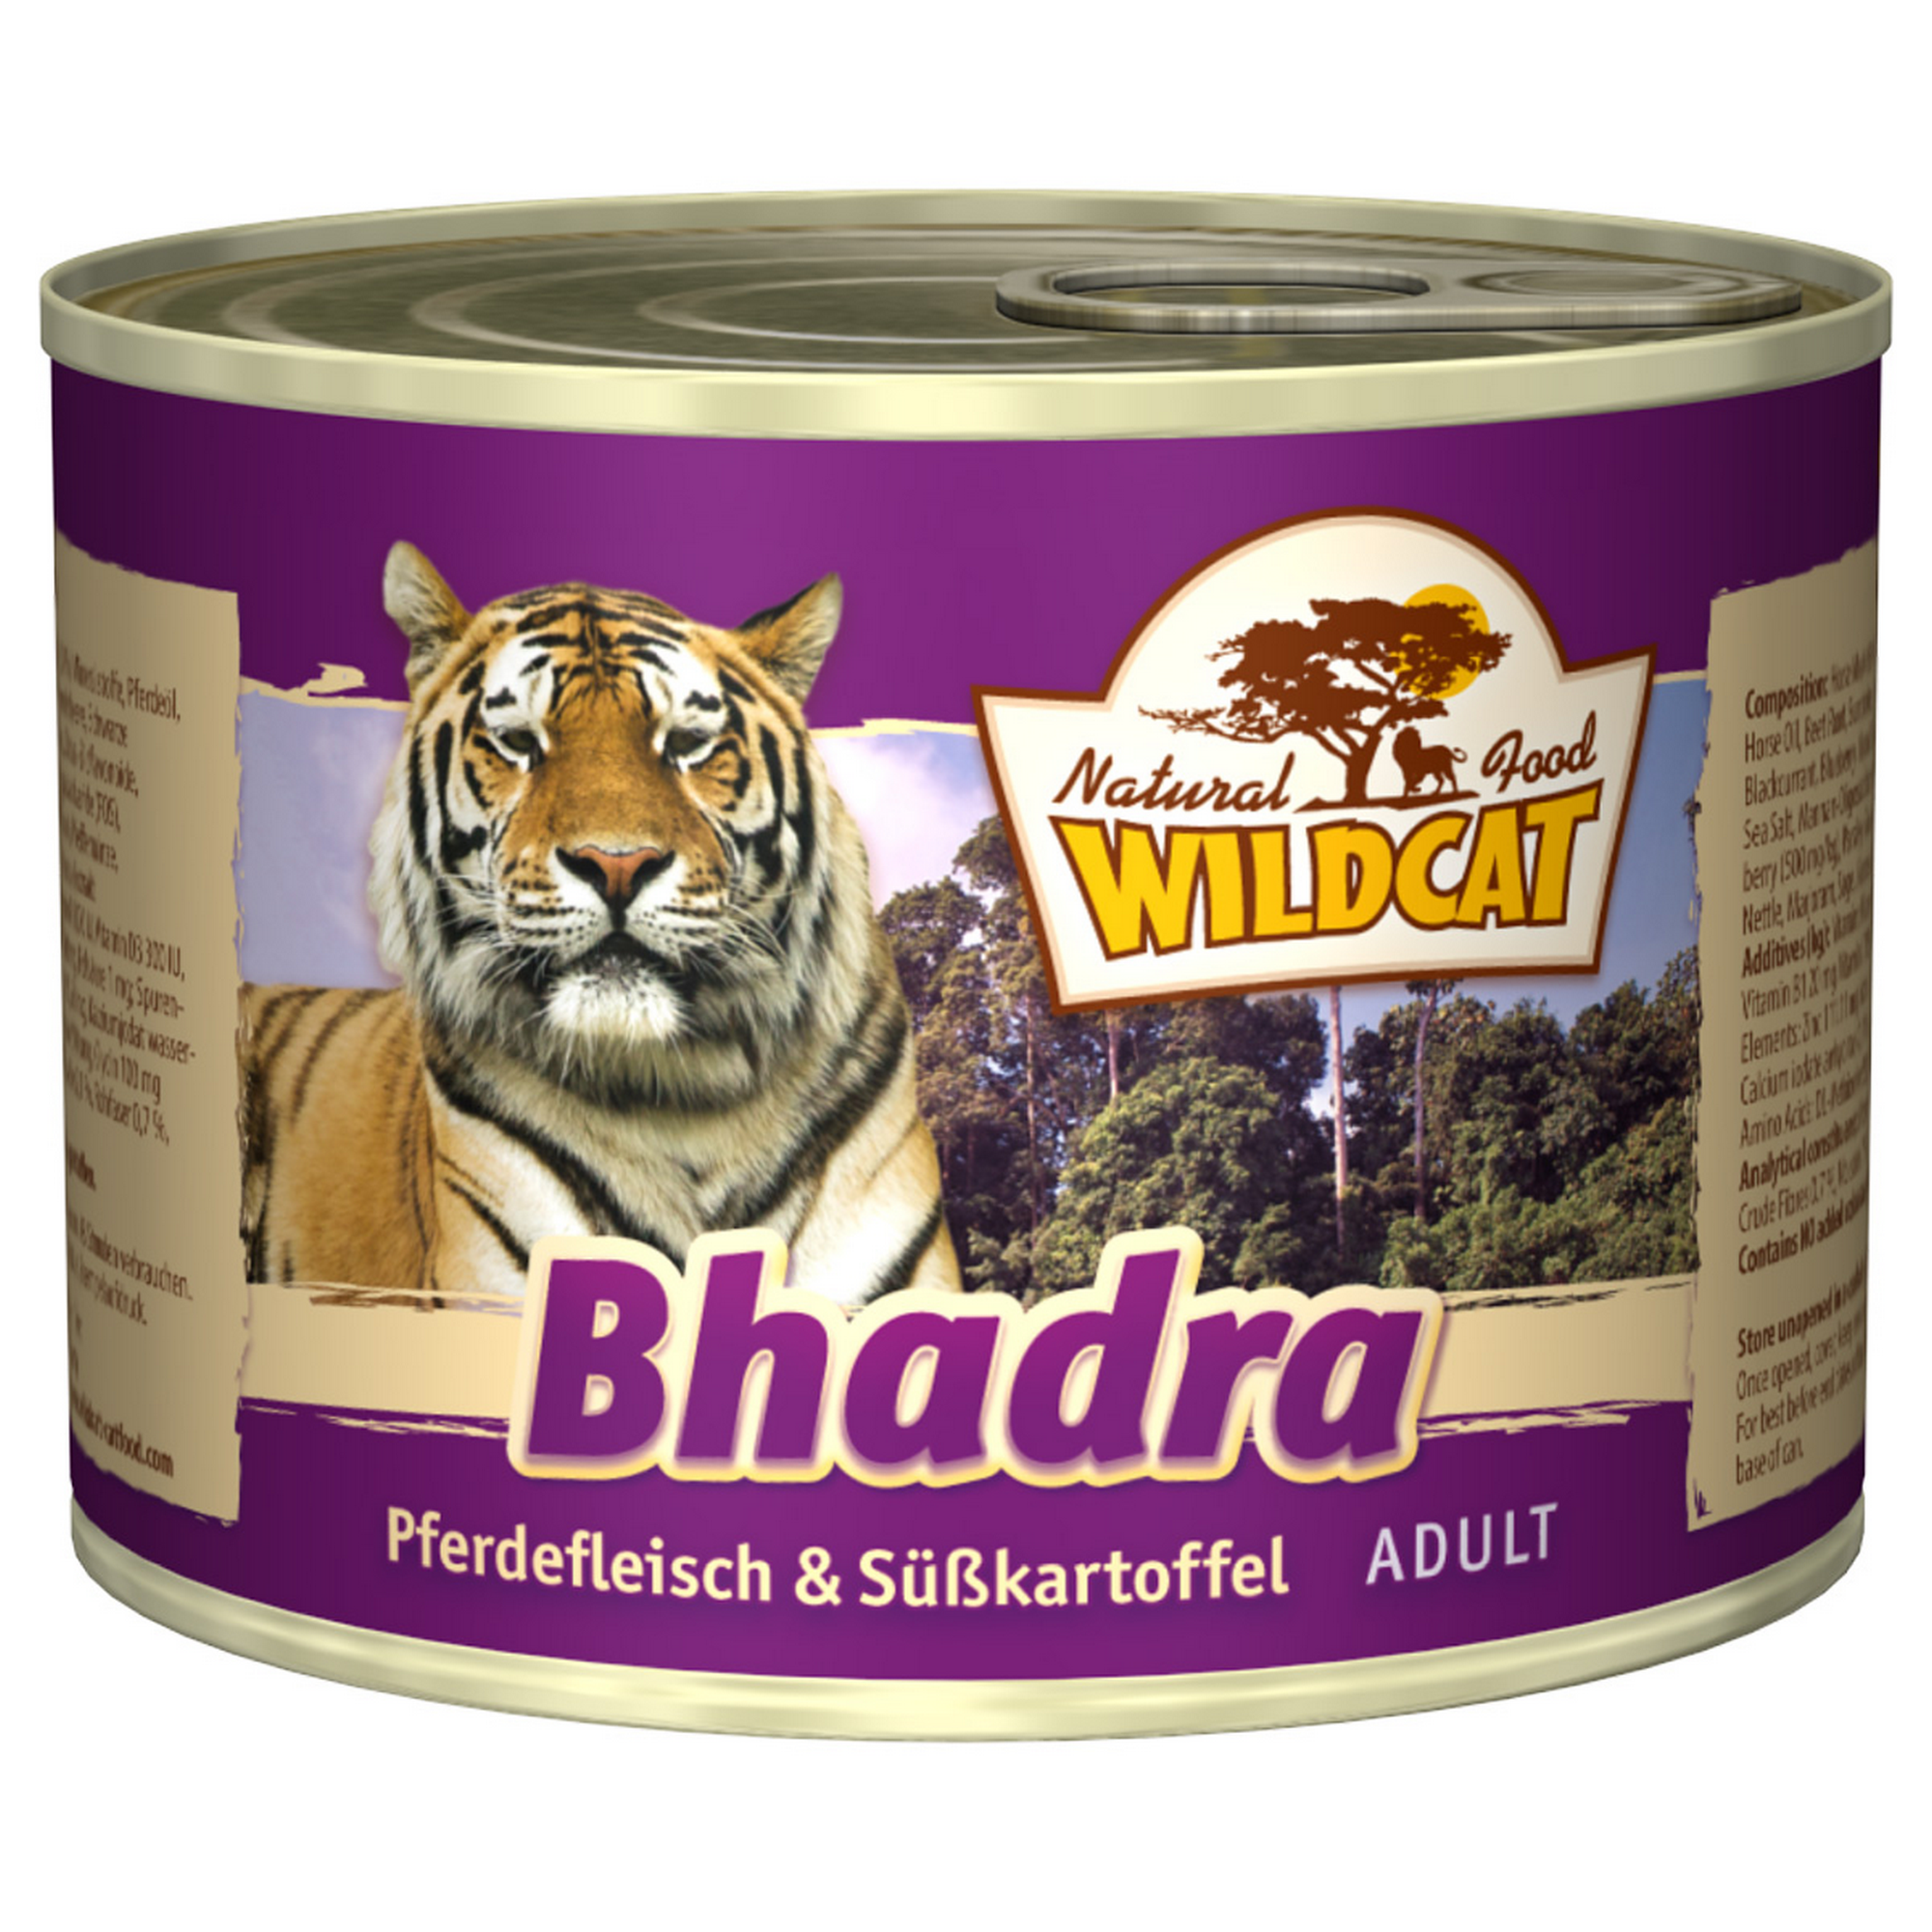 Katzennassfutter 'Bhadra' Adult, mit Pferdefleisch und Süßkartoffel, 200 g + product picture